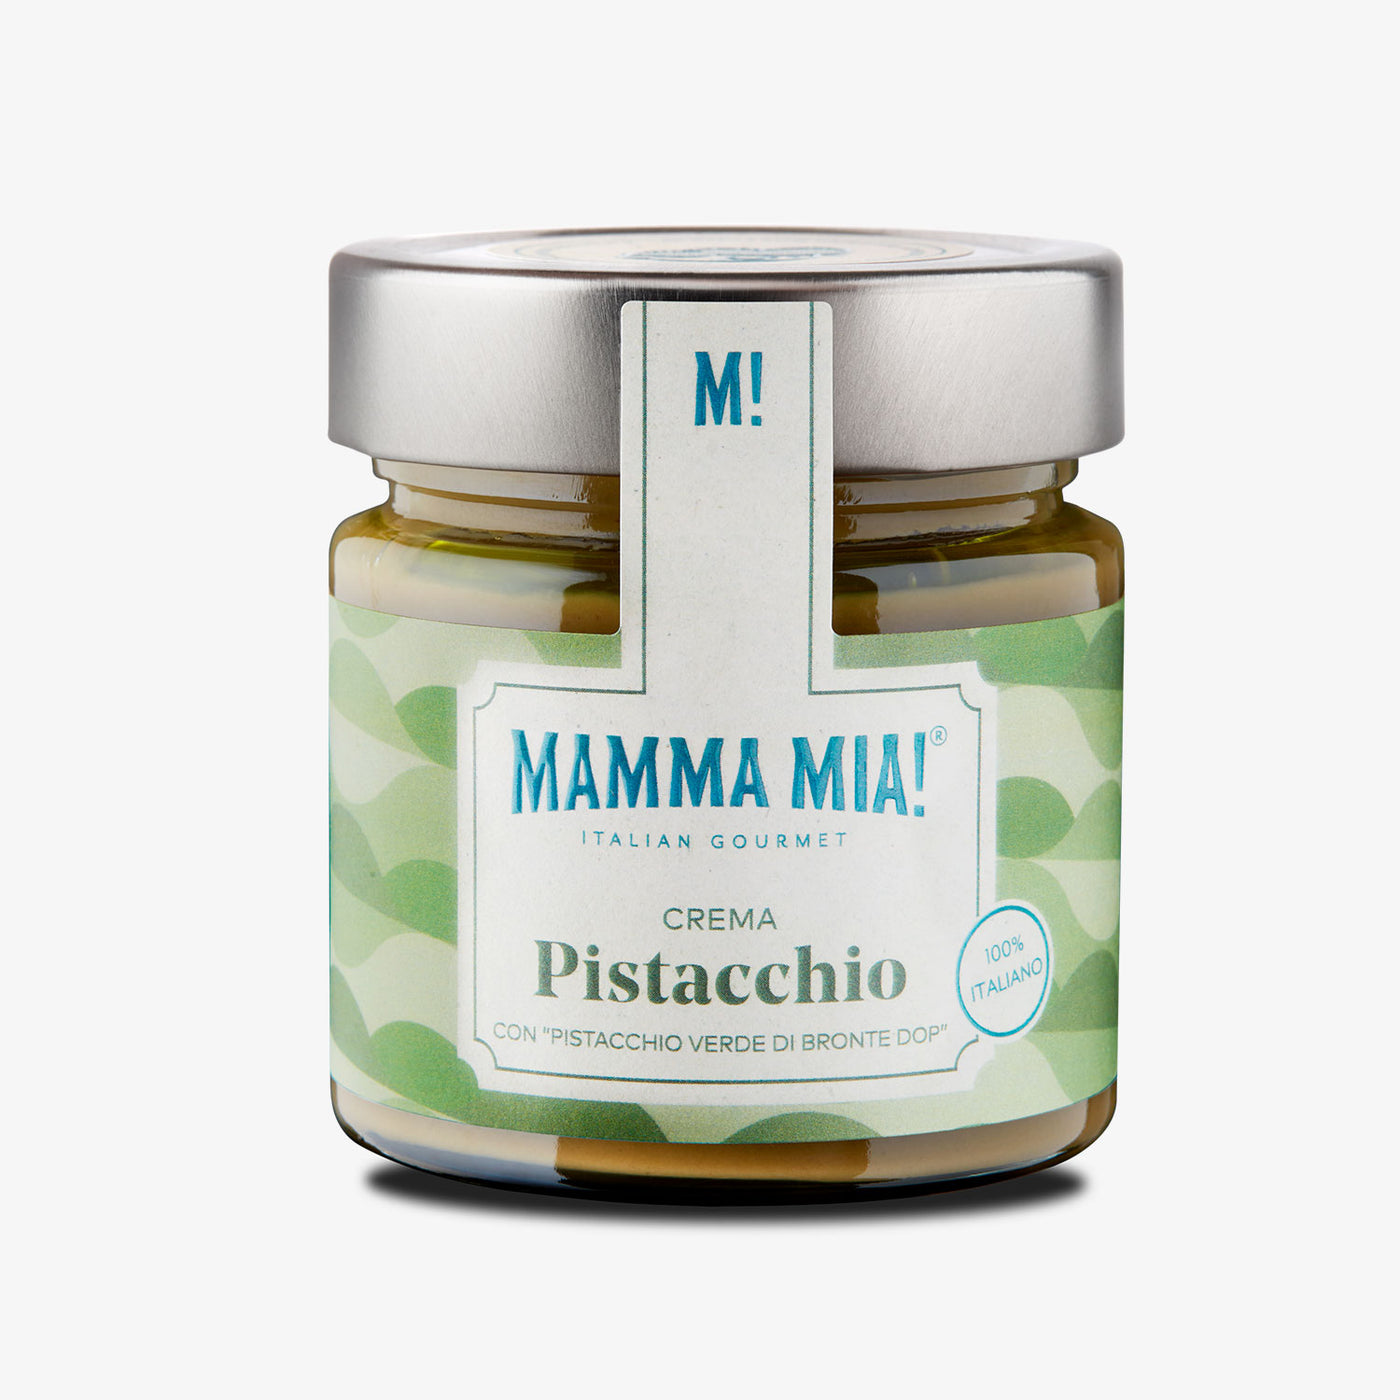 Mamma mia! Sicilian Pistachio DOP Cream from Bronte